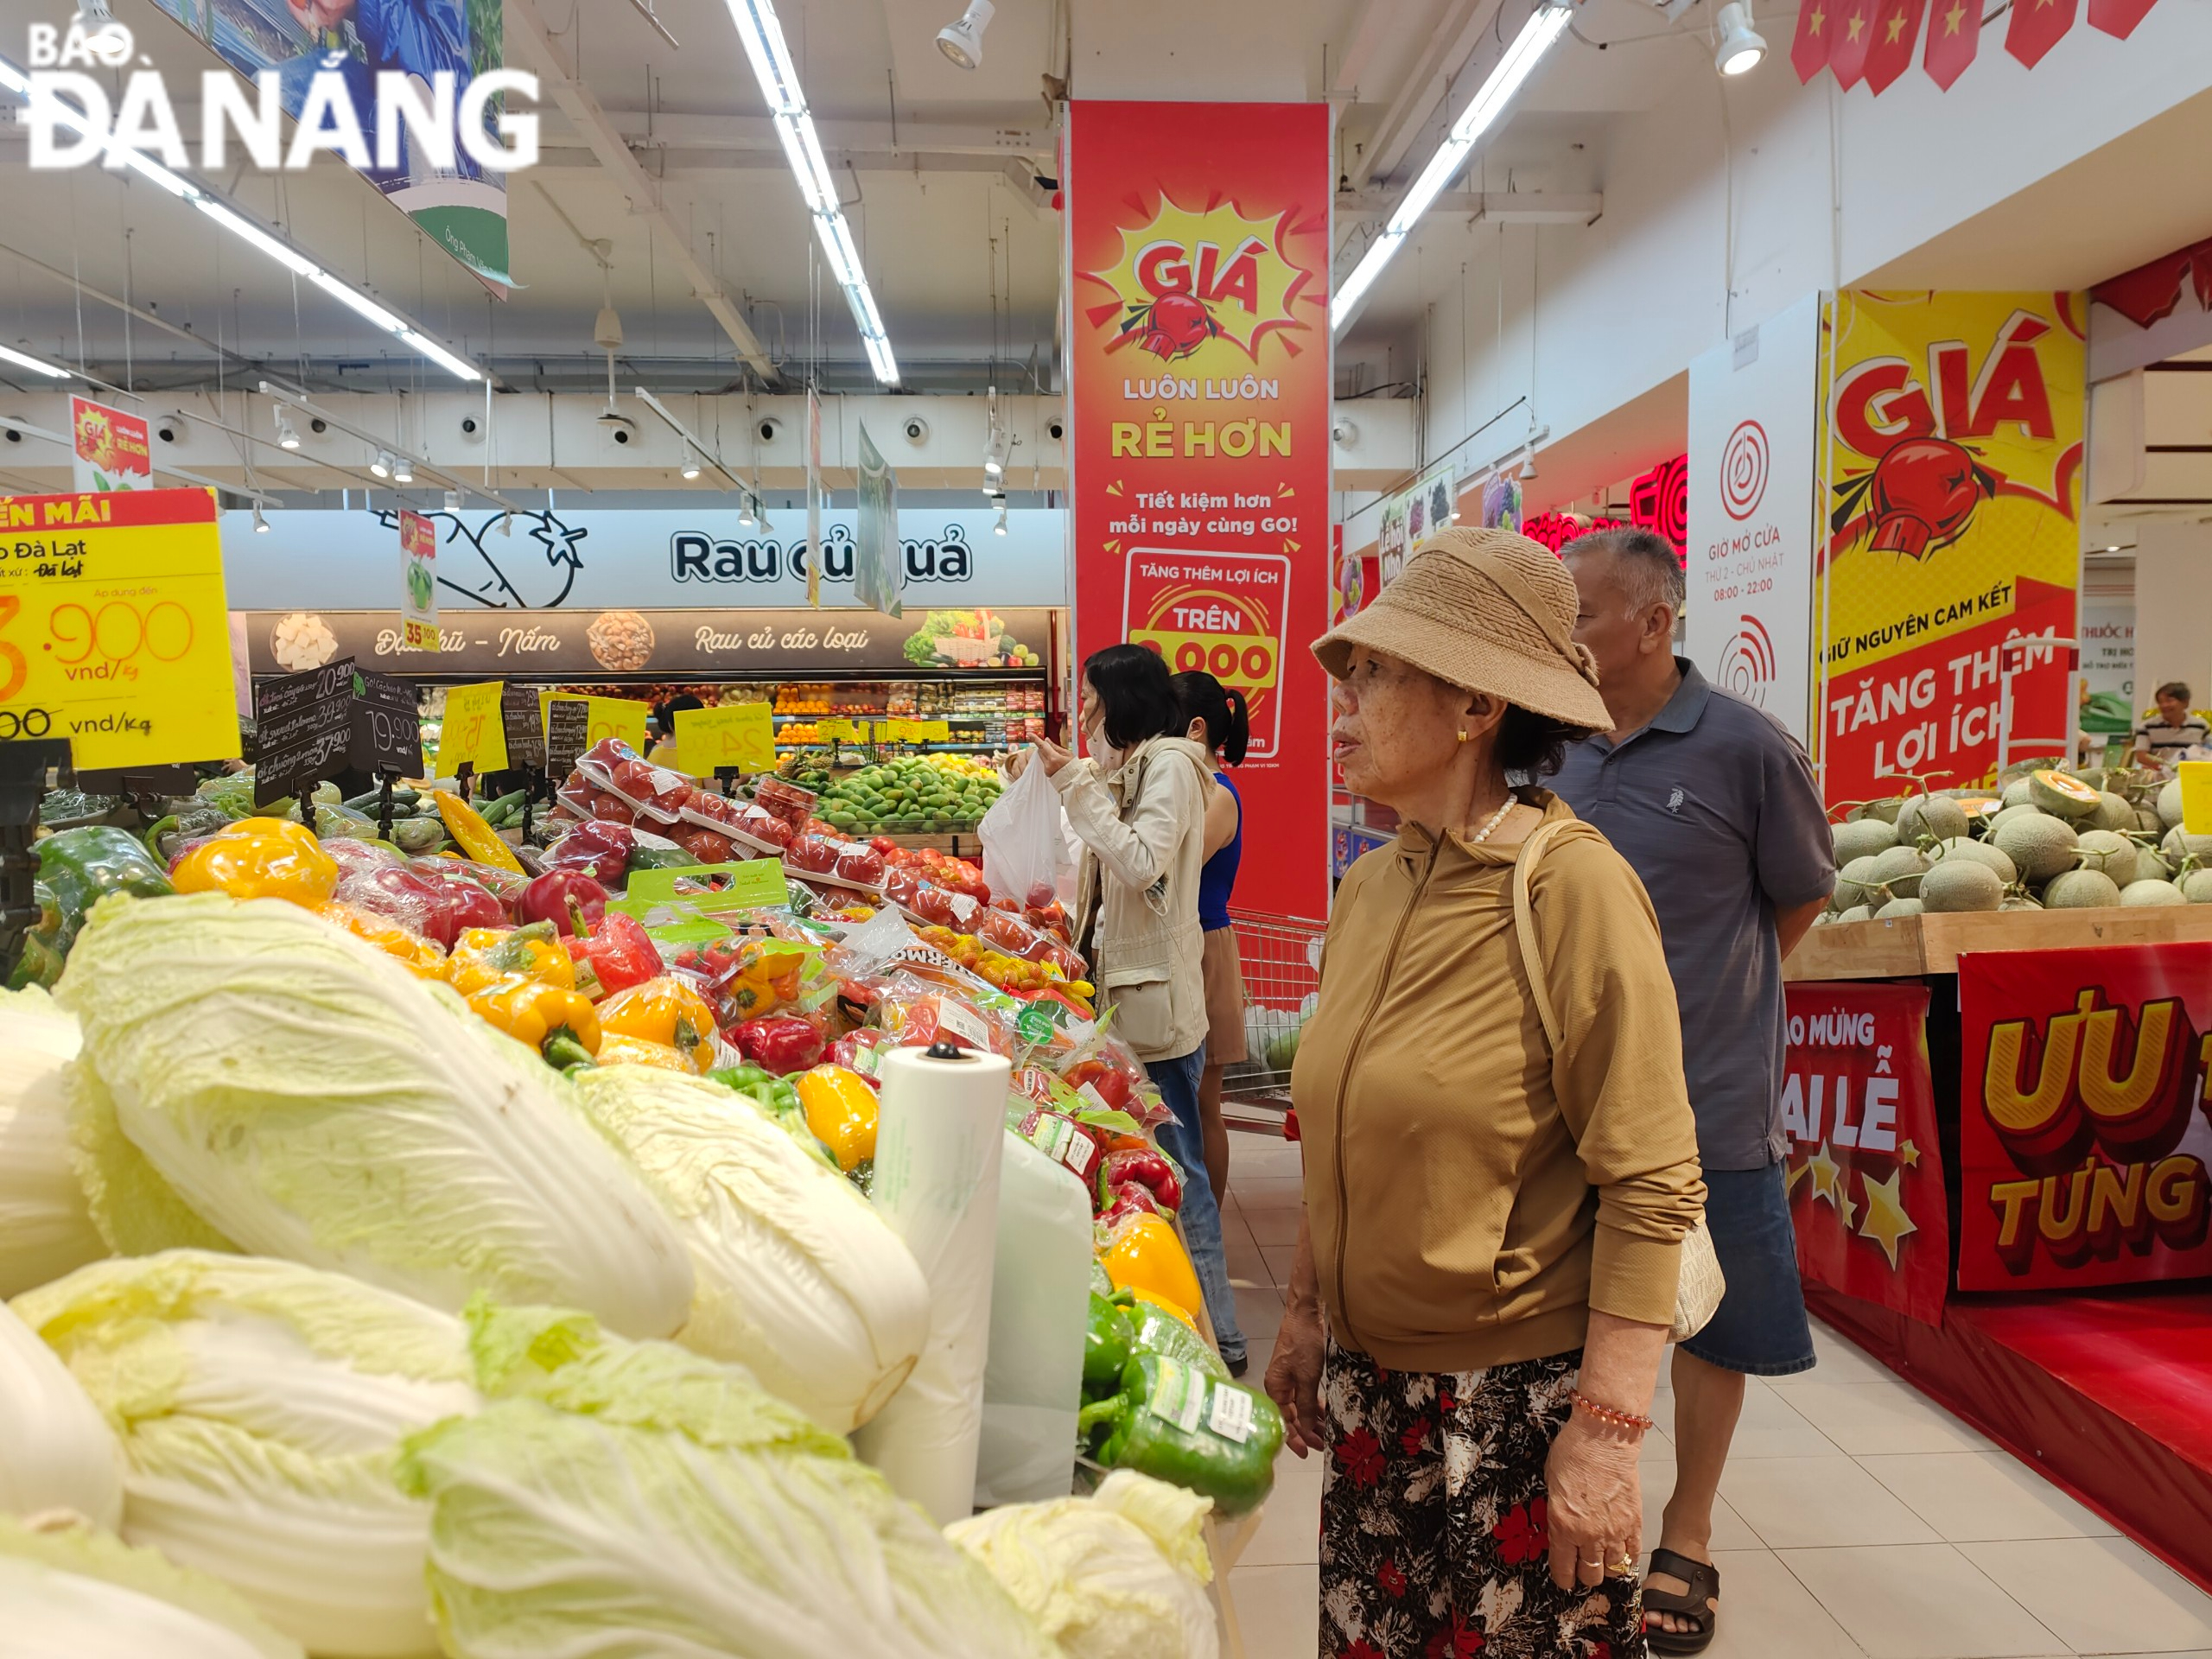 Nhiều người dùng tận dụng dịp này để mua sắm để hưởng các ưu đãi, giảm giá tại các siêu thị.